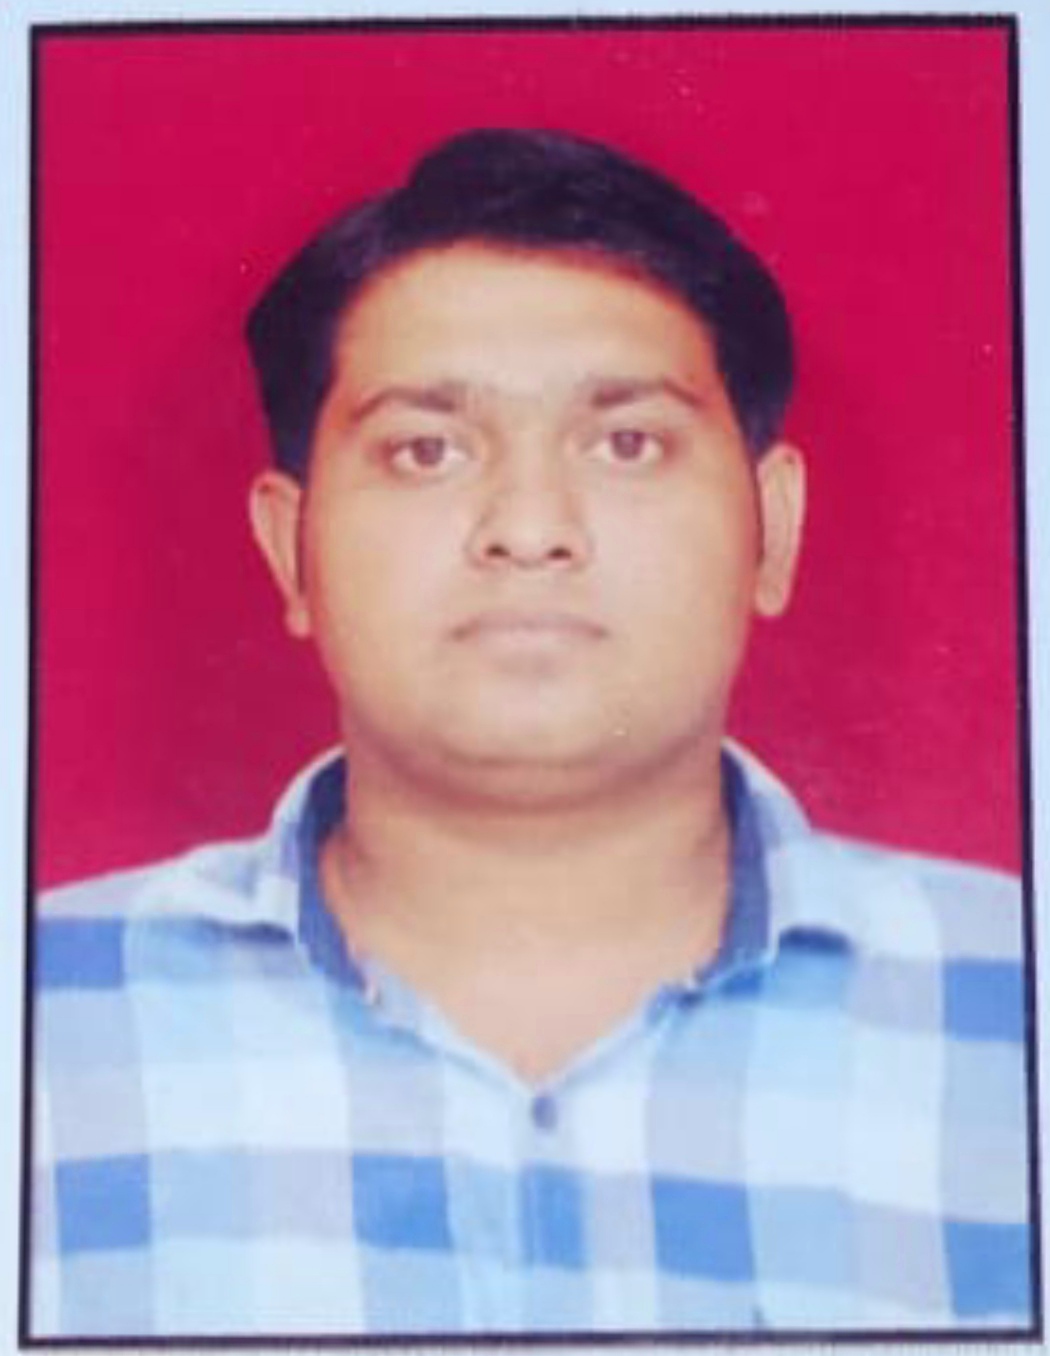 Mr. Rajneekant Patel